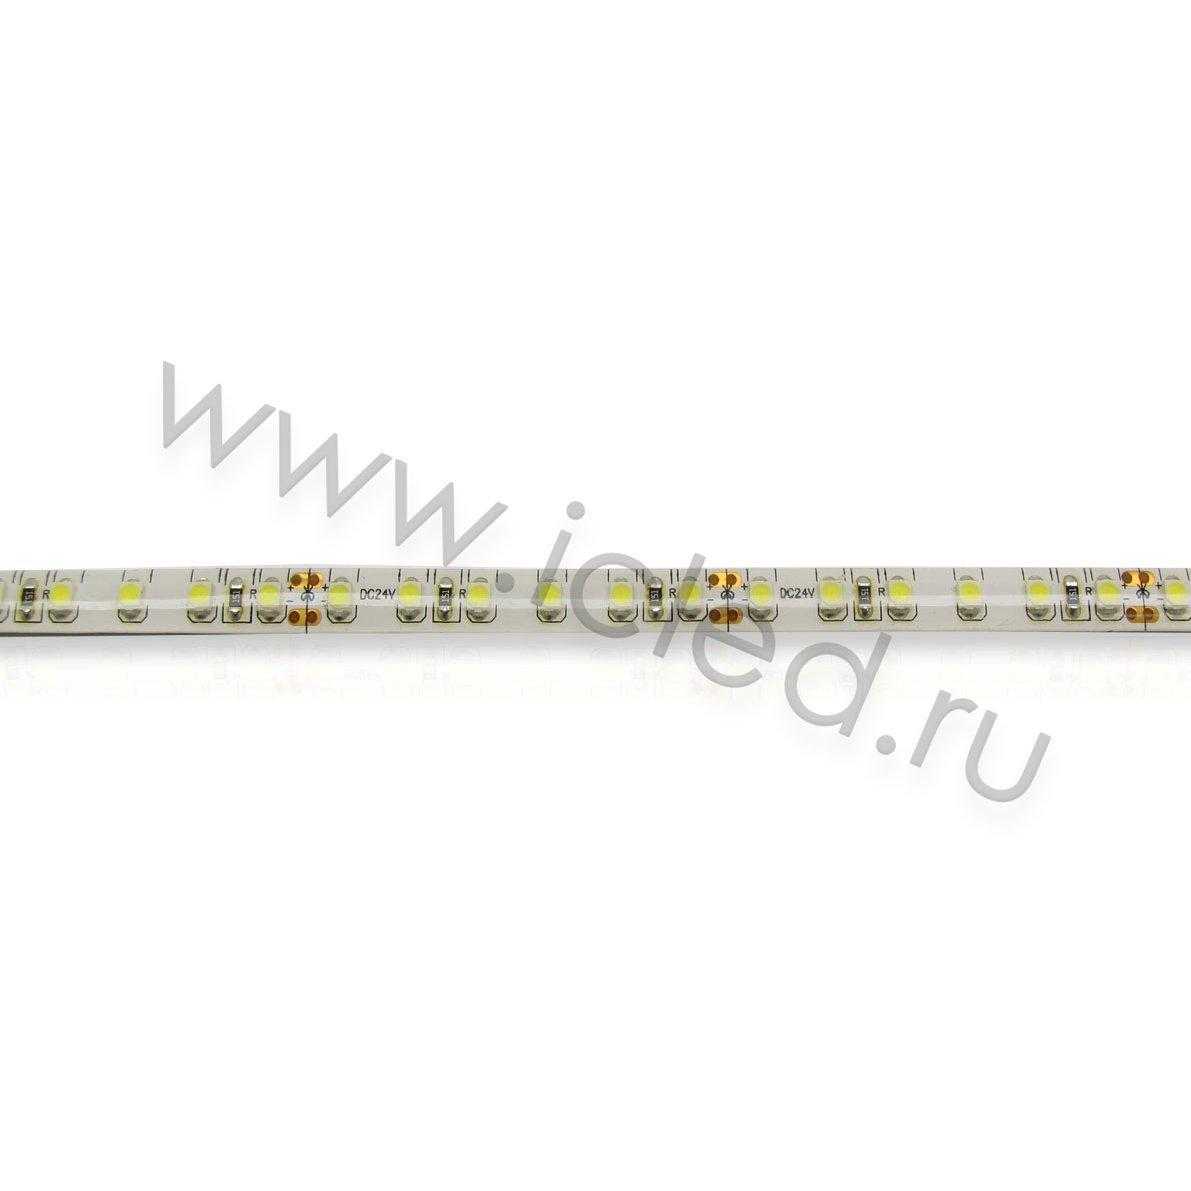 Влагозащищенные светодиодные ленты Светодиодная лента Standart PRO class, 3528, 120 led/m, Day White, 24V, IP65 Icled